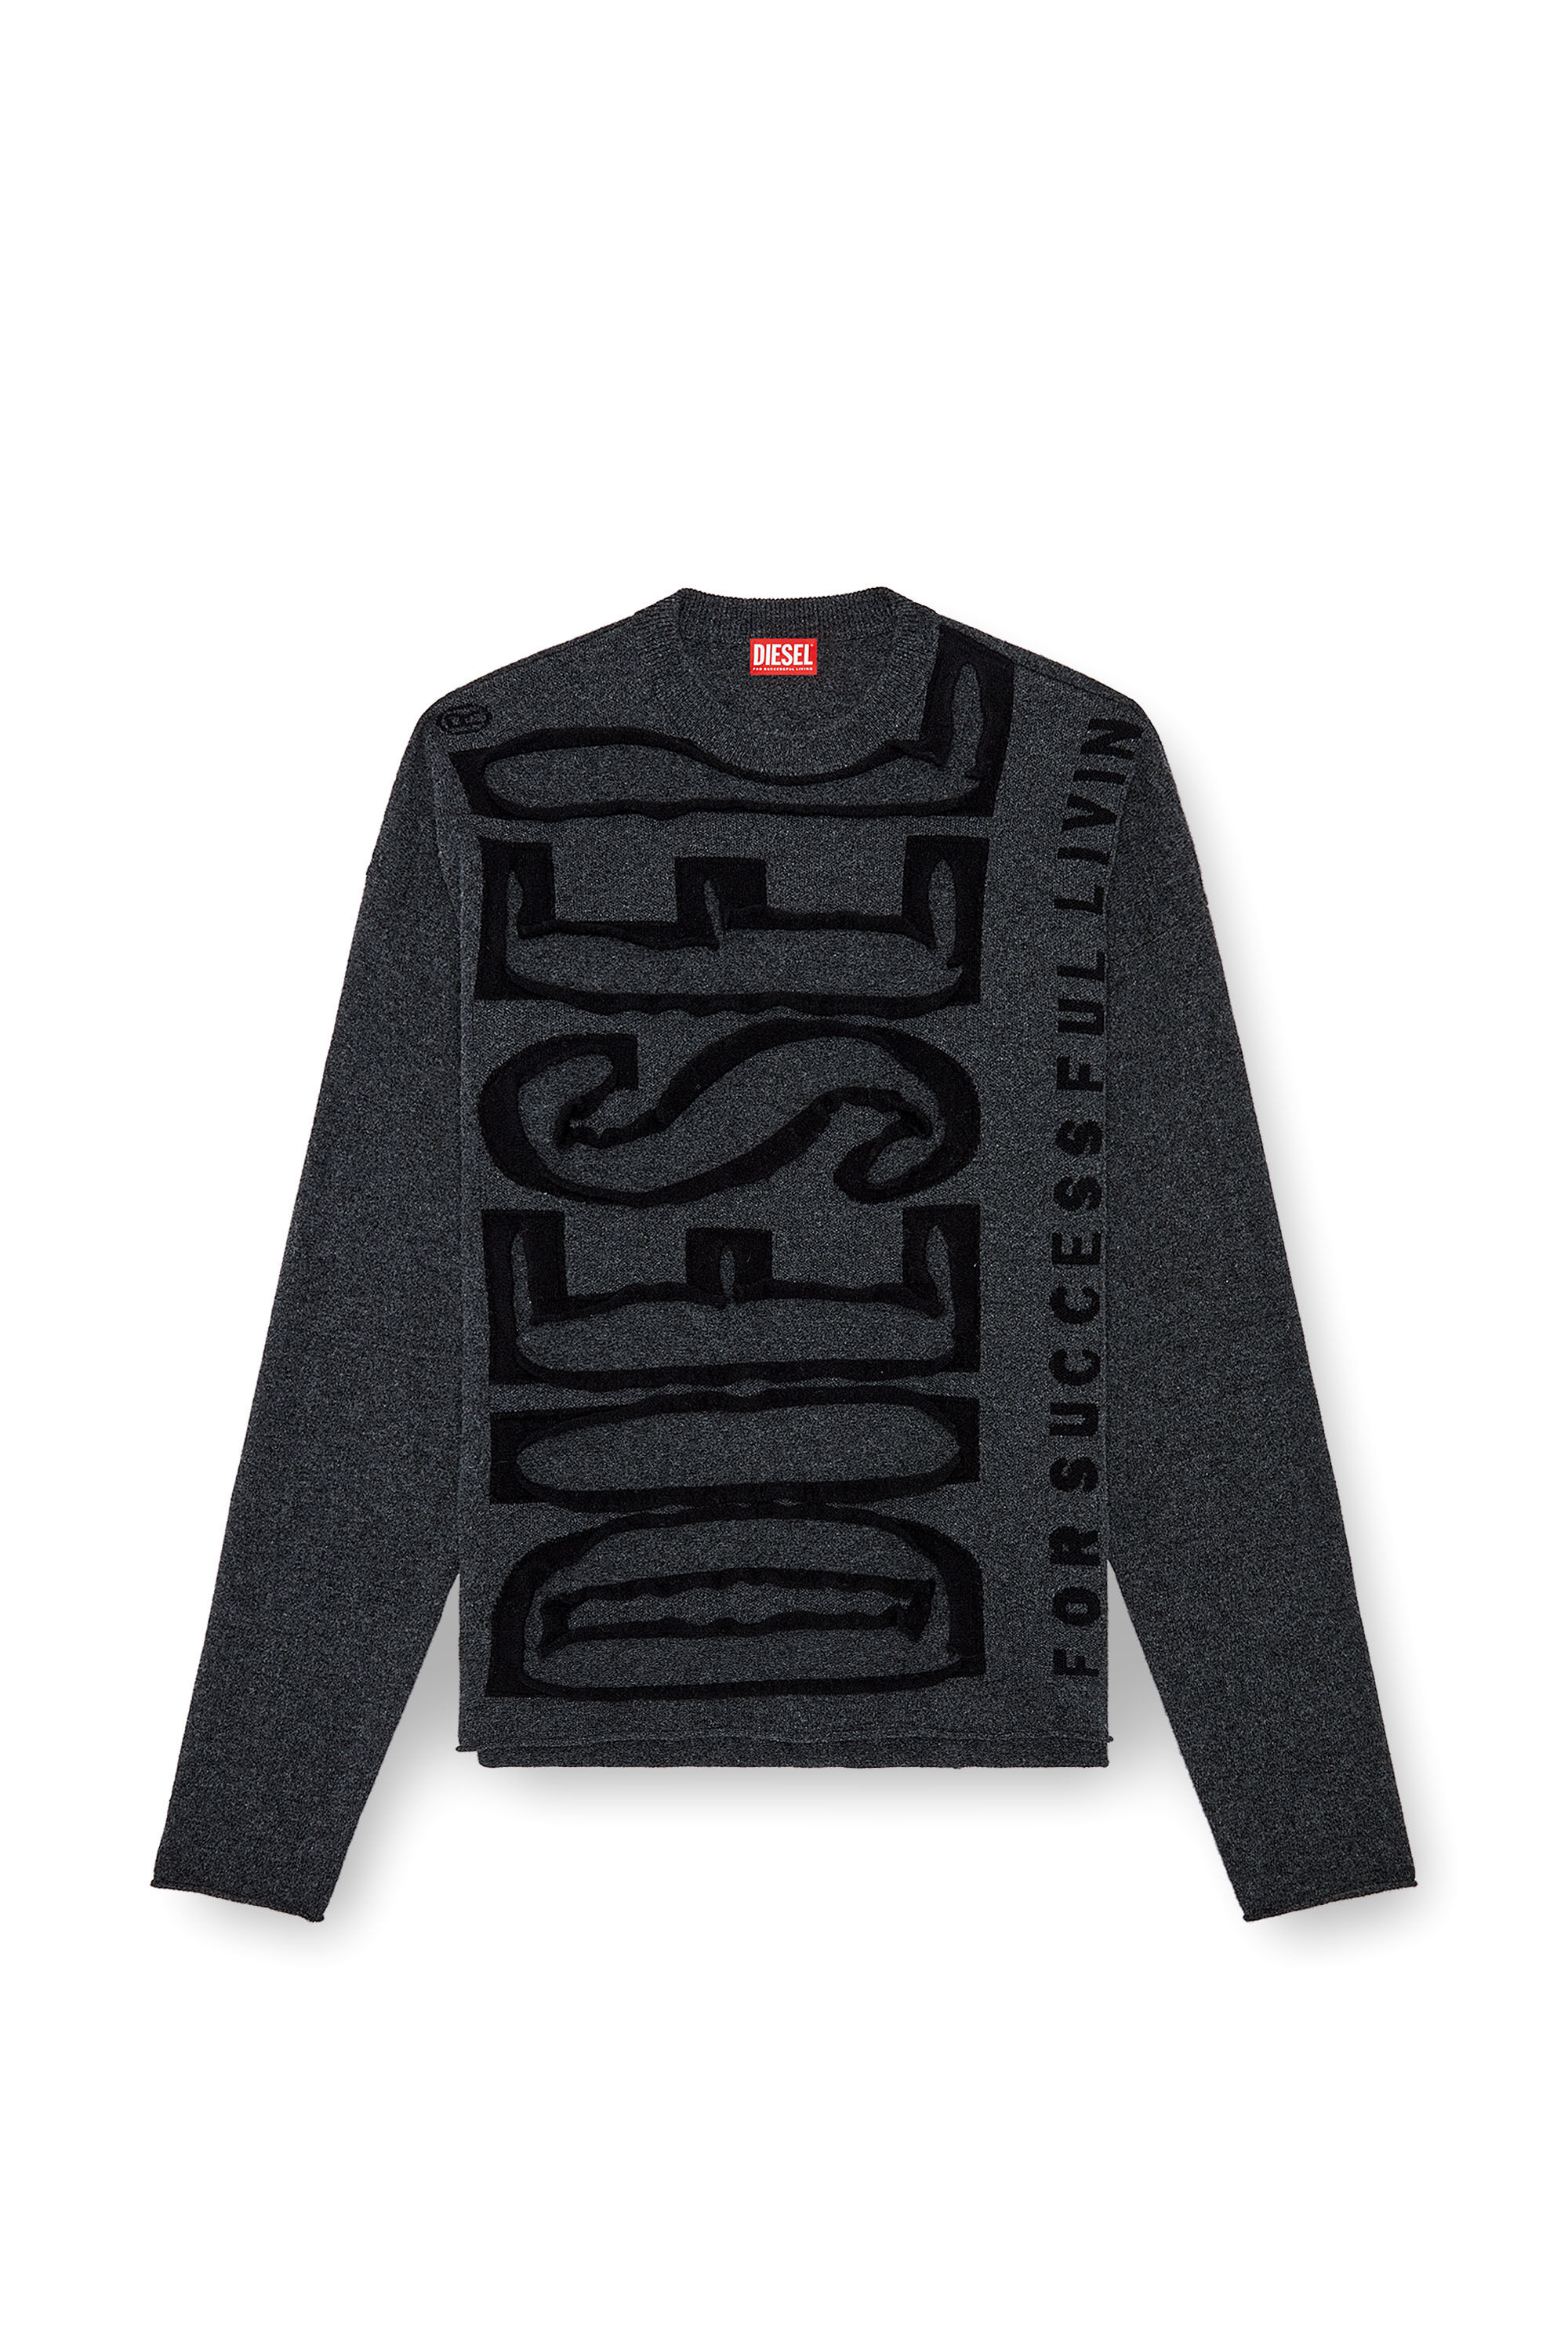 Diesel - K-FLOYD, Hombre Jersey de lana con Super Logo despegado in Gris - Image 2